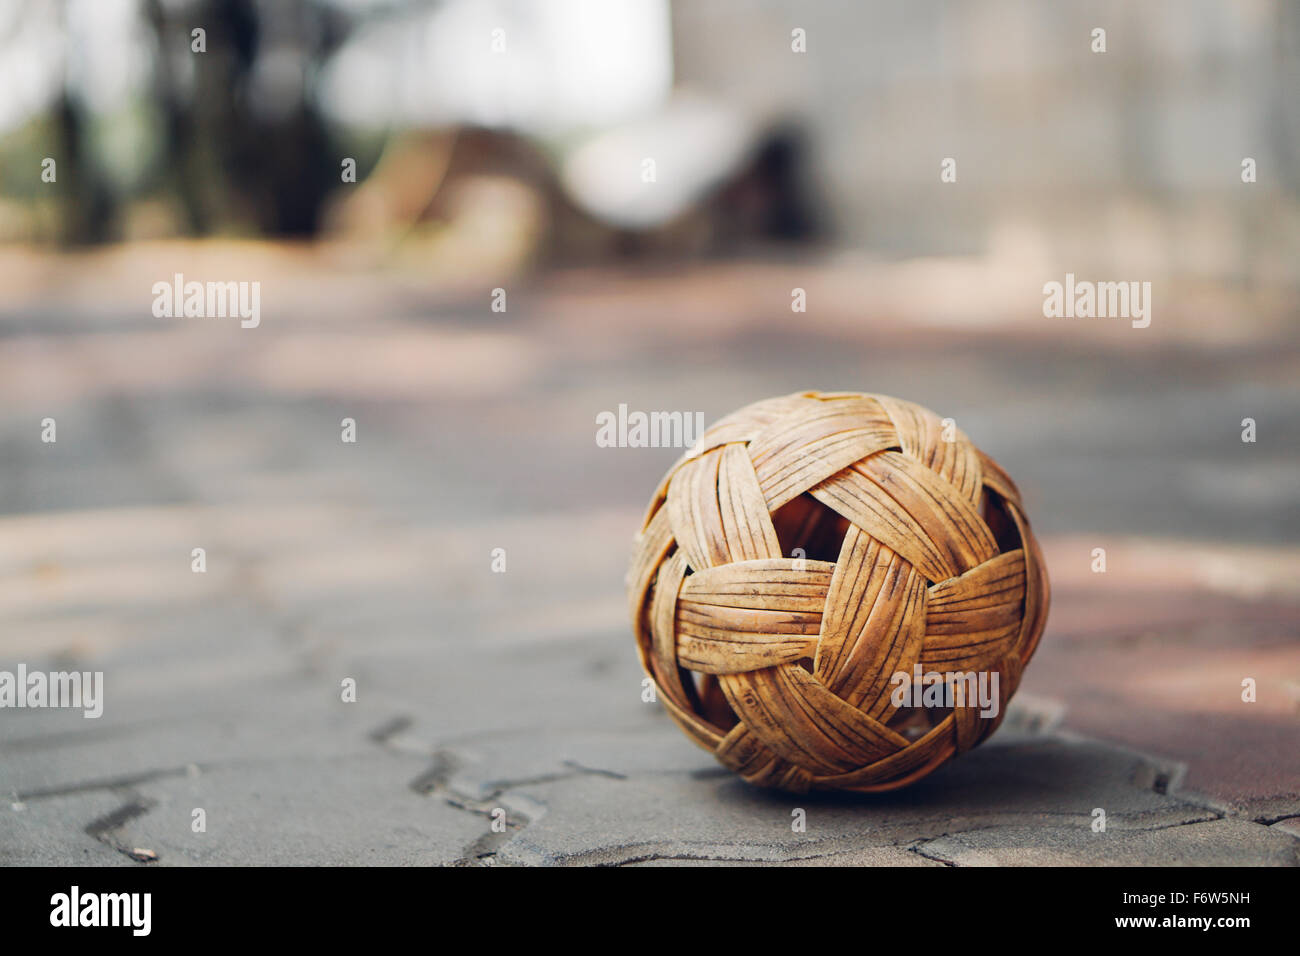 Charakter-symbole takraw Ball auf Pflaster- Steine mit Kopie Raum, Hintergrund verschwommen. Südostasien berühmten lokalen Sport oder asiatischen Aktivitäten Konzept Stockfoto